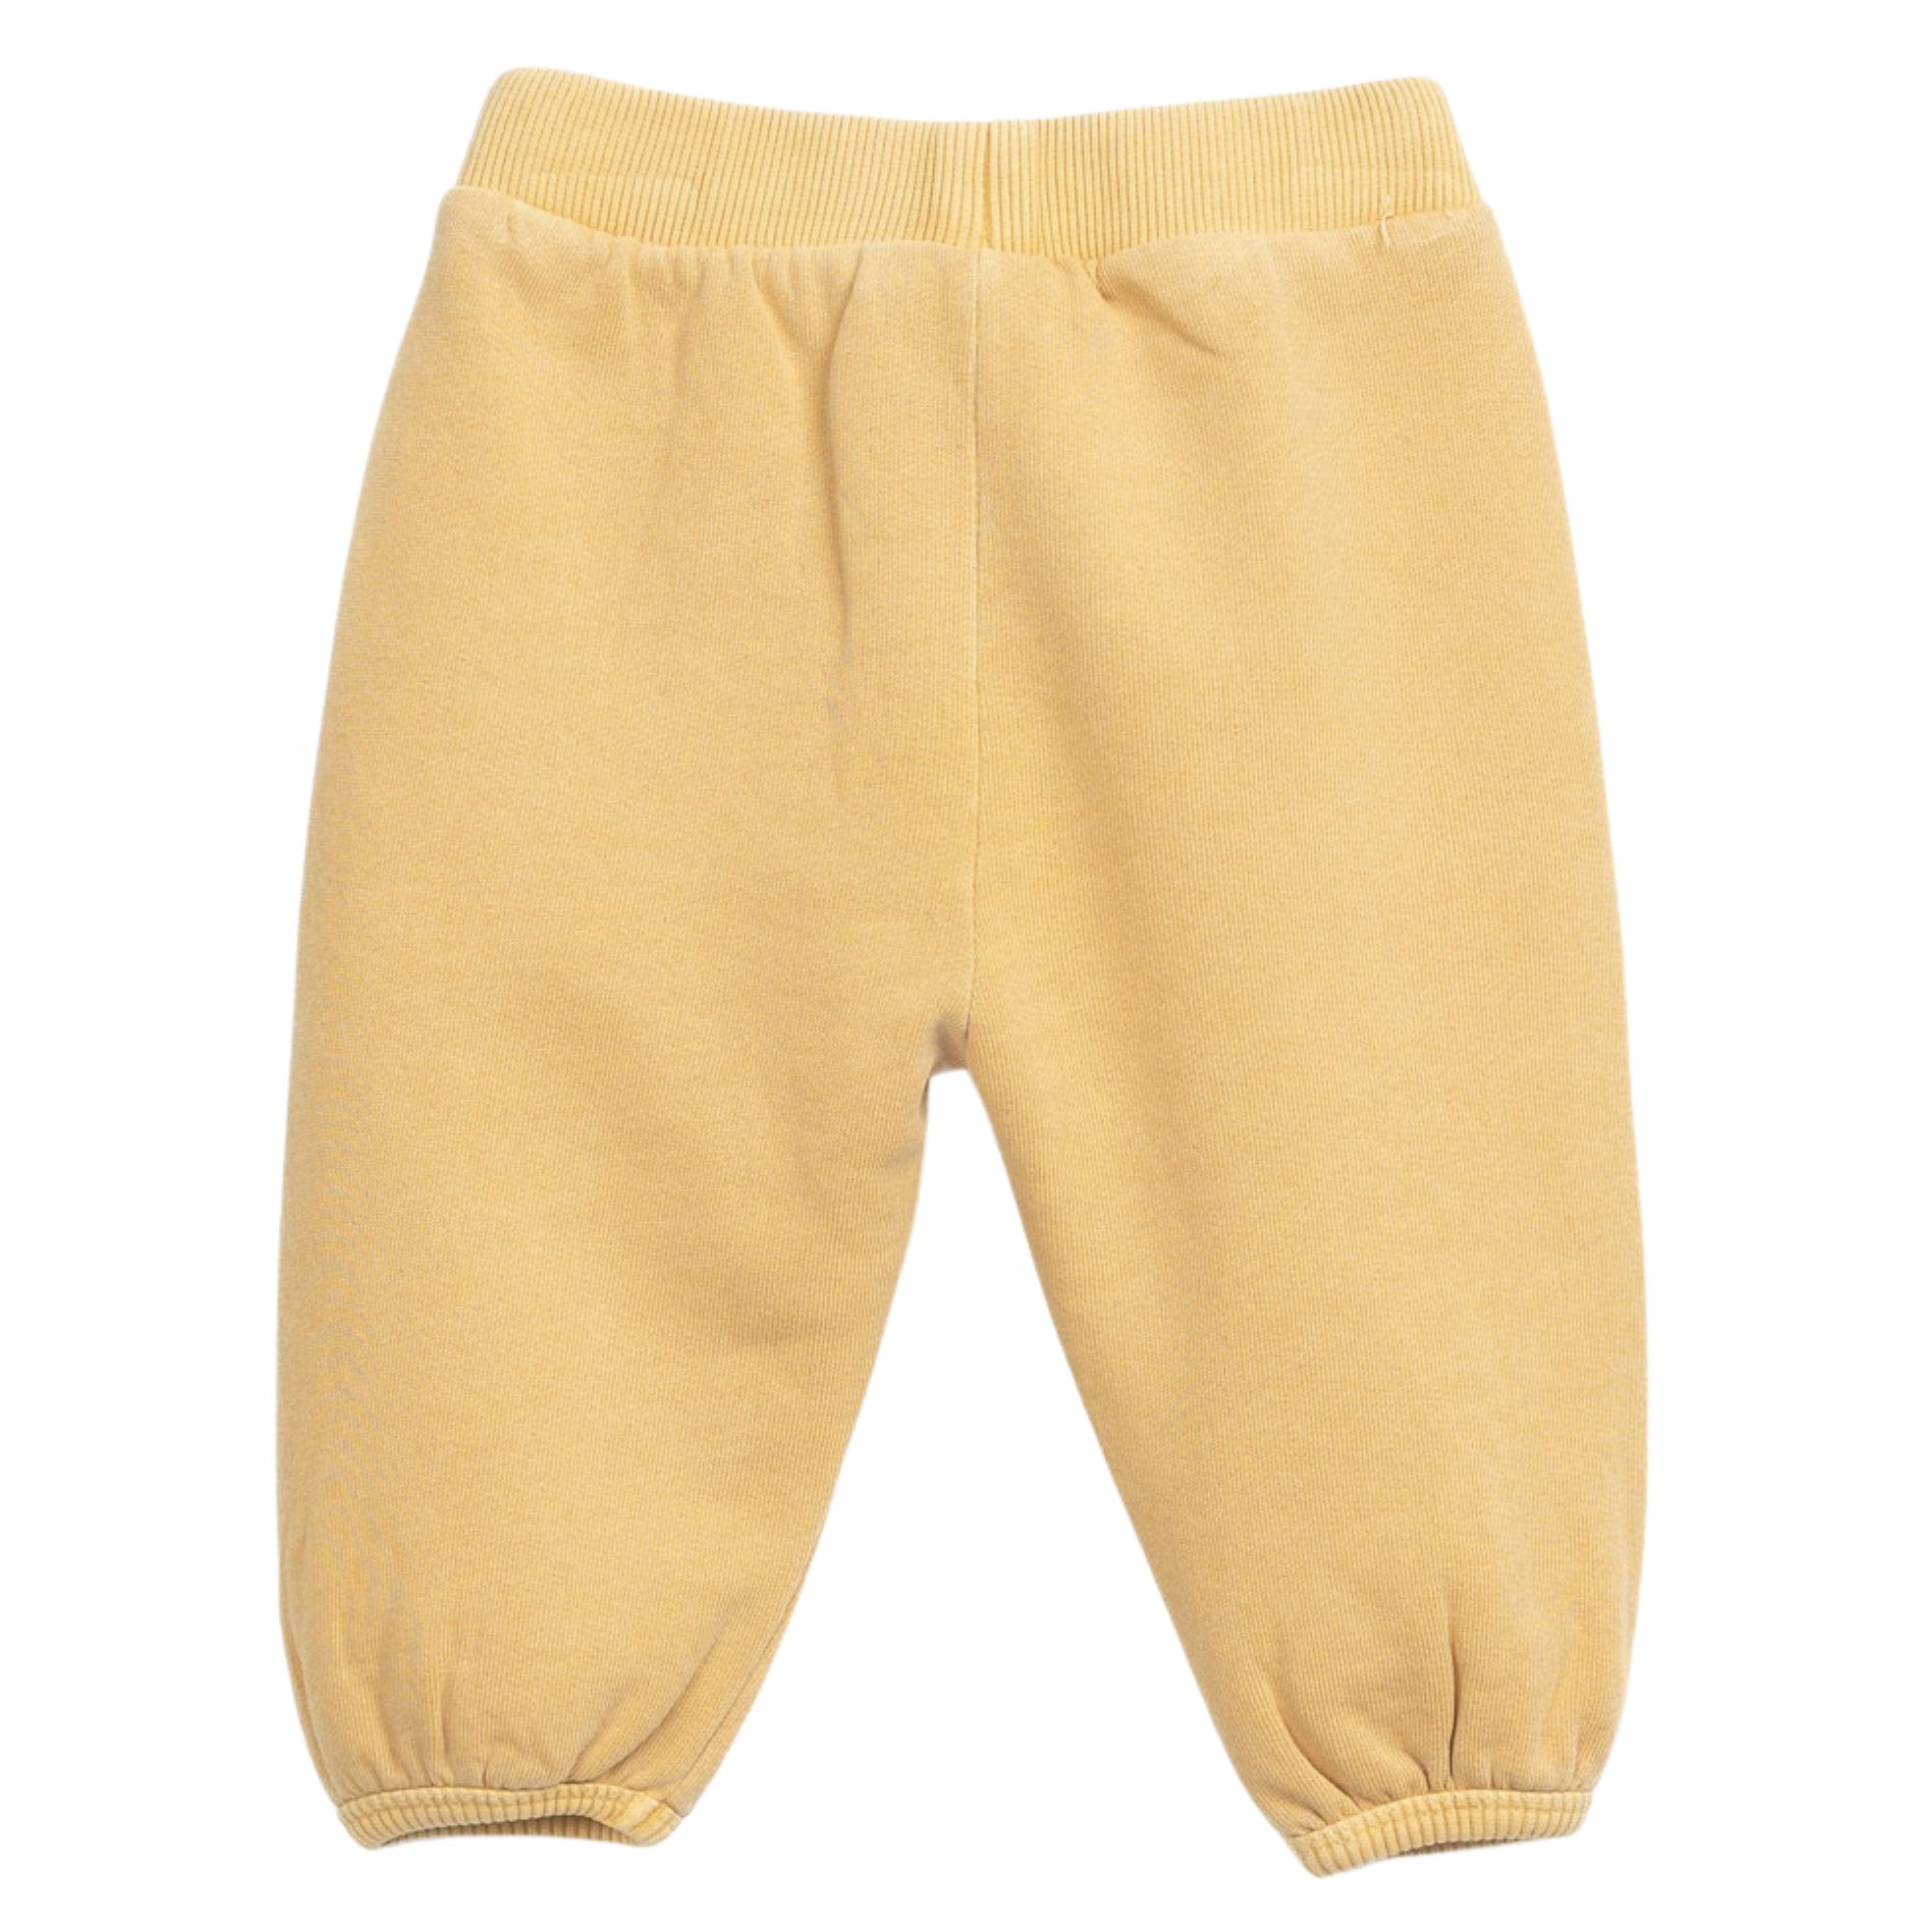 pantalone-felpa-colore-giallo-dietro